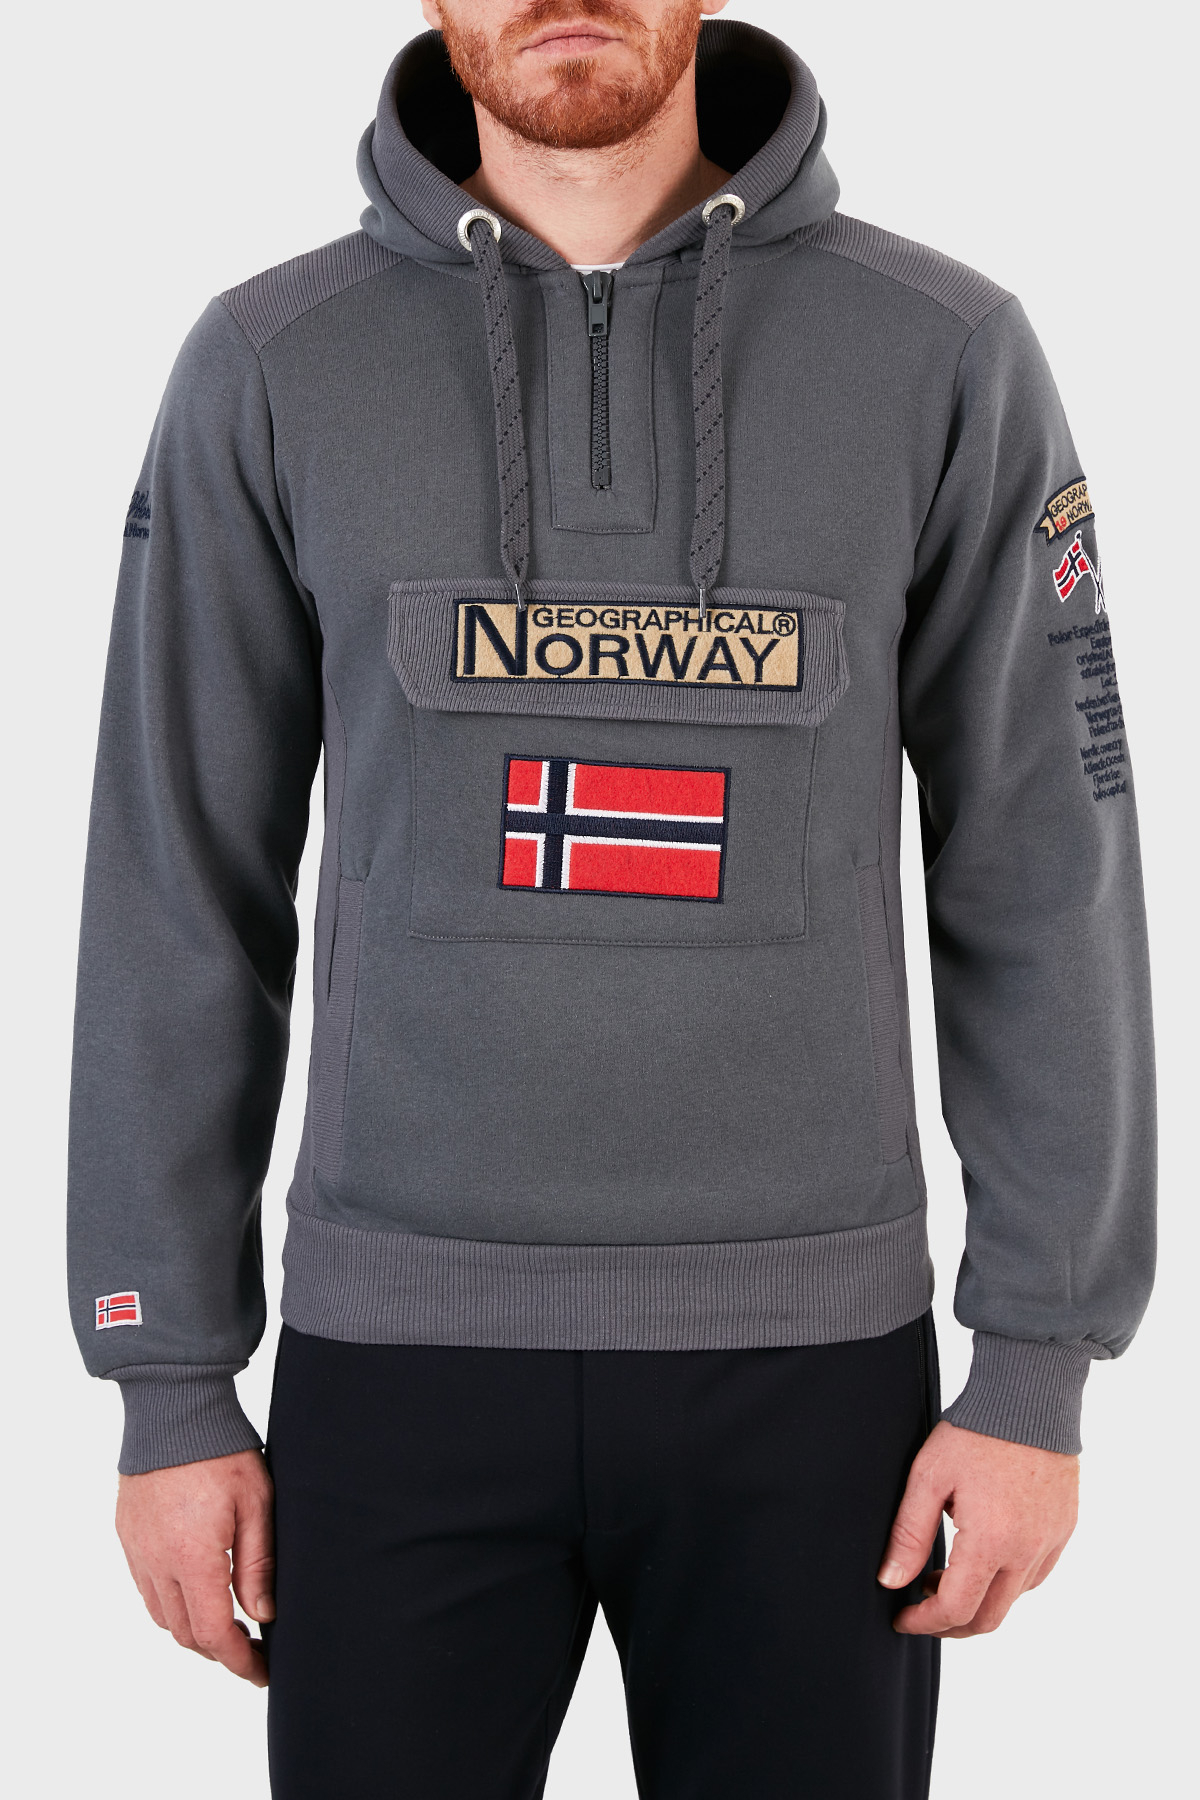 Norway Geographical Kapüşonlu Yarım Fermuarlı Outdoor Erkek Sweat GYMCLASSA100 KOYU GRİ